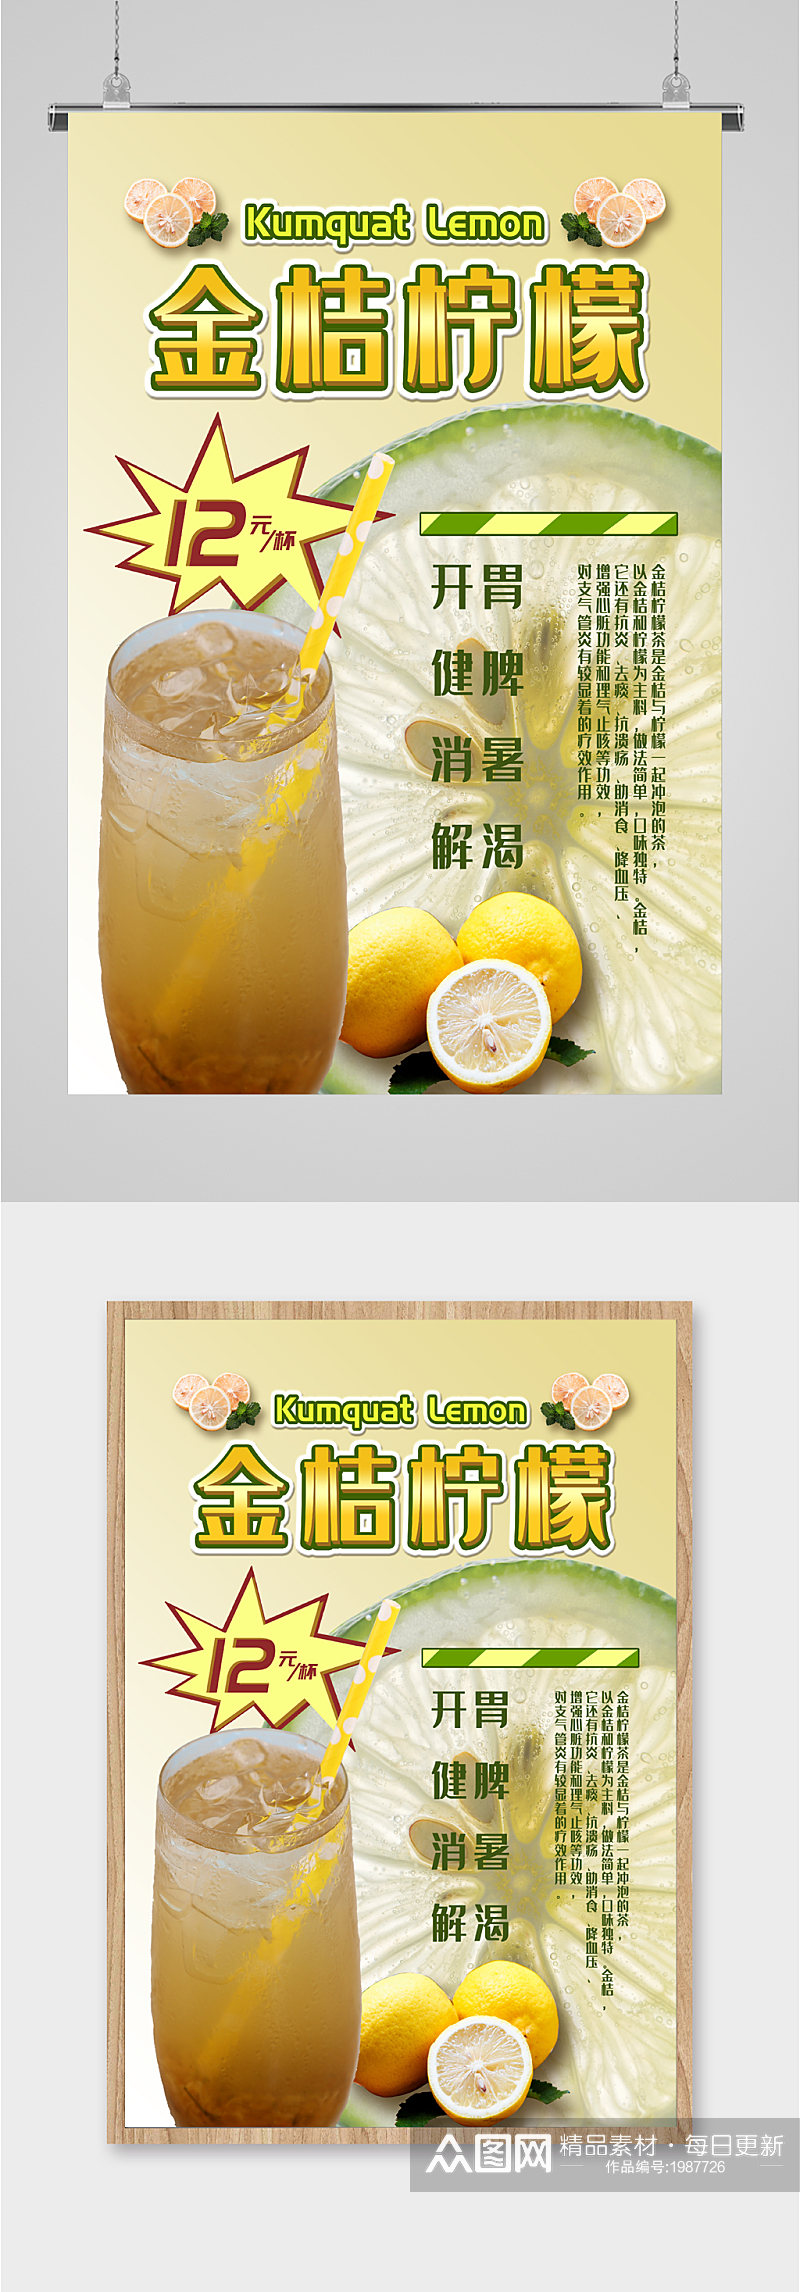 金桔柠檬宣传海报素材